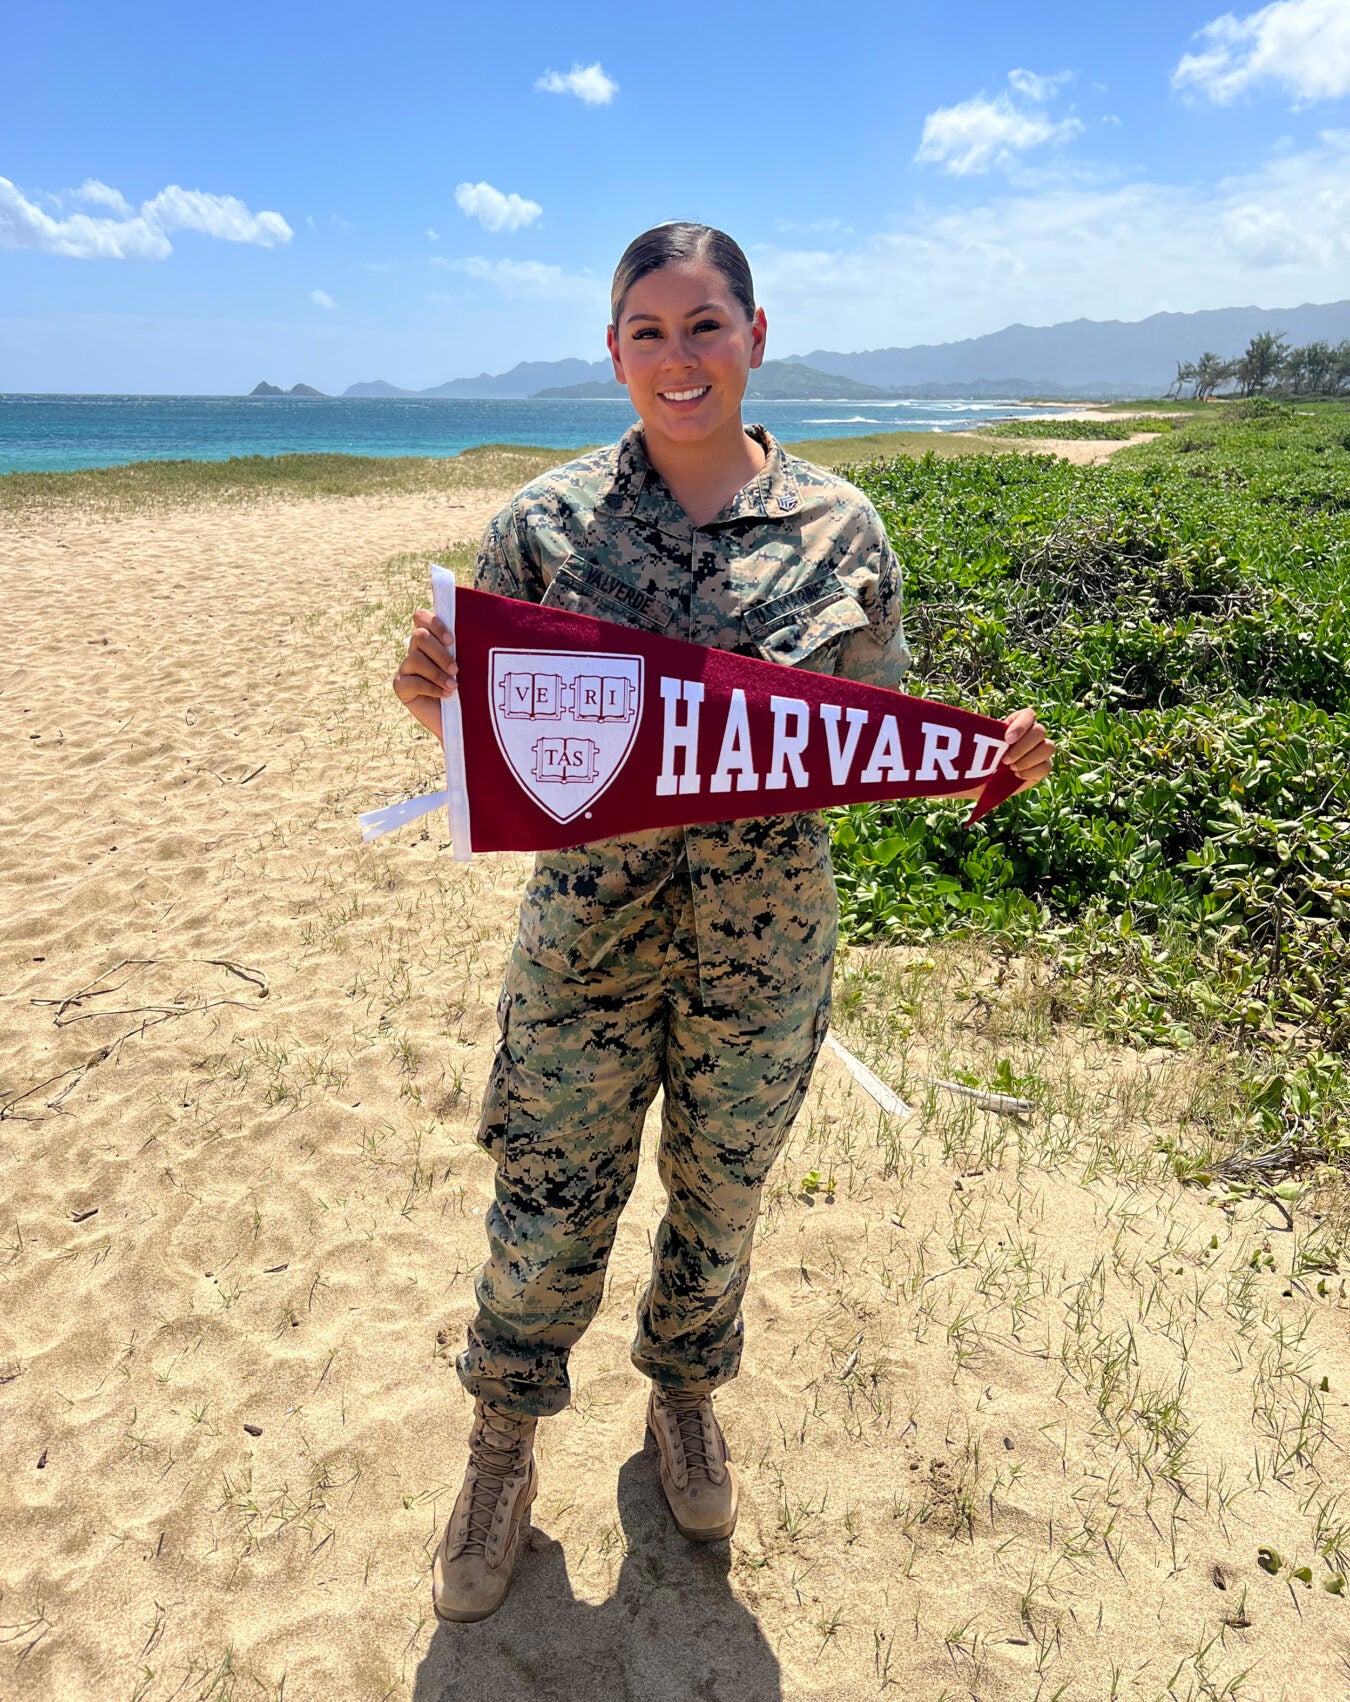 Vanessa Valverde holds Harvard banner while in uniform.